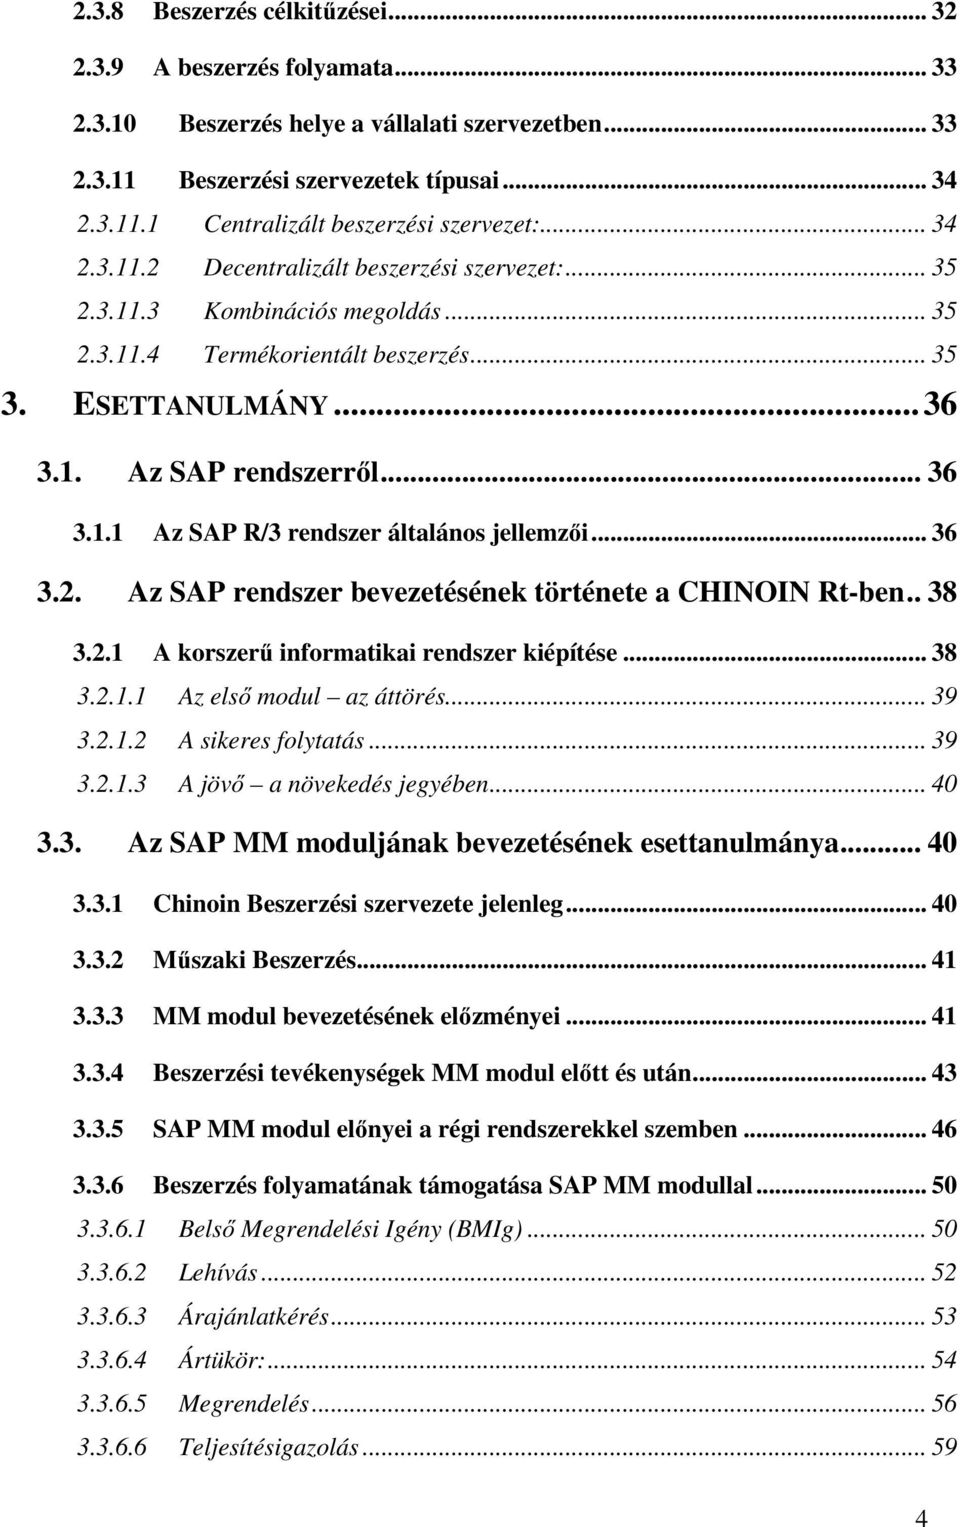 .. 36 3.2. Az SAP rendszer bevezetésének története a CHINOIN Rt-ben.. 38 3.2.1 A korszerő informatikai rendszer kiépítése... 38 3.2.1.1 Az elsı modul az áttörés... 39 3.2.1.2 A sikeres folytatás.